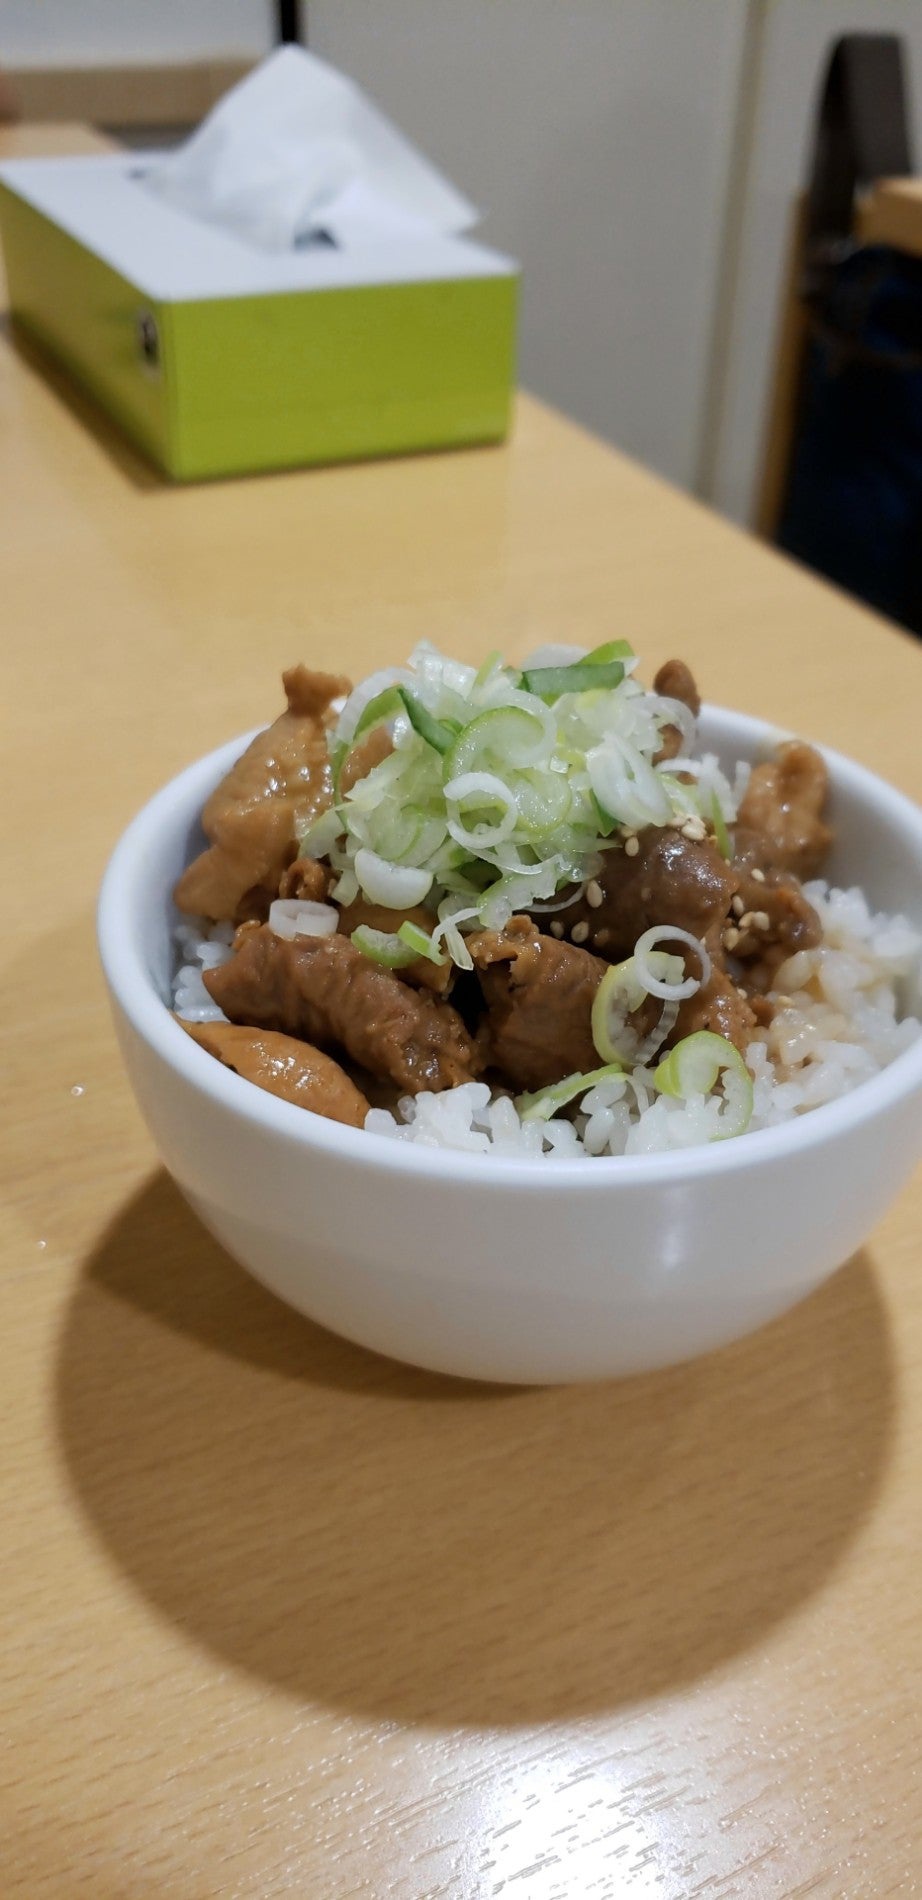 葭川公園駅周辺 ストレート麺ランキングTOP3